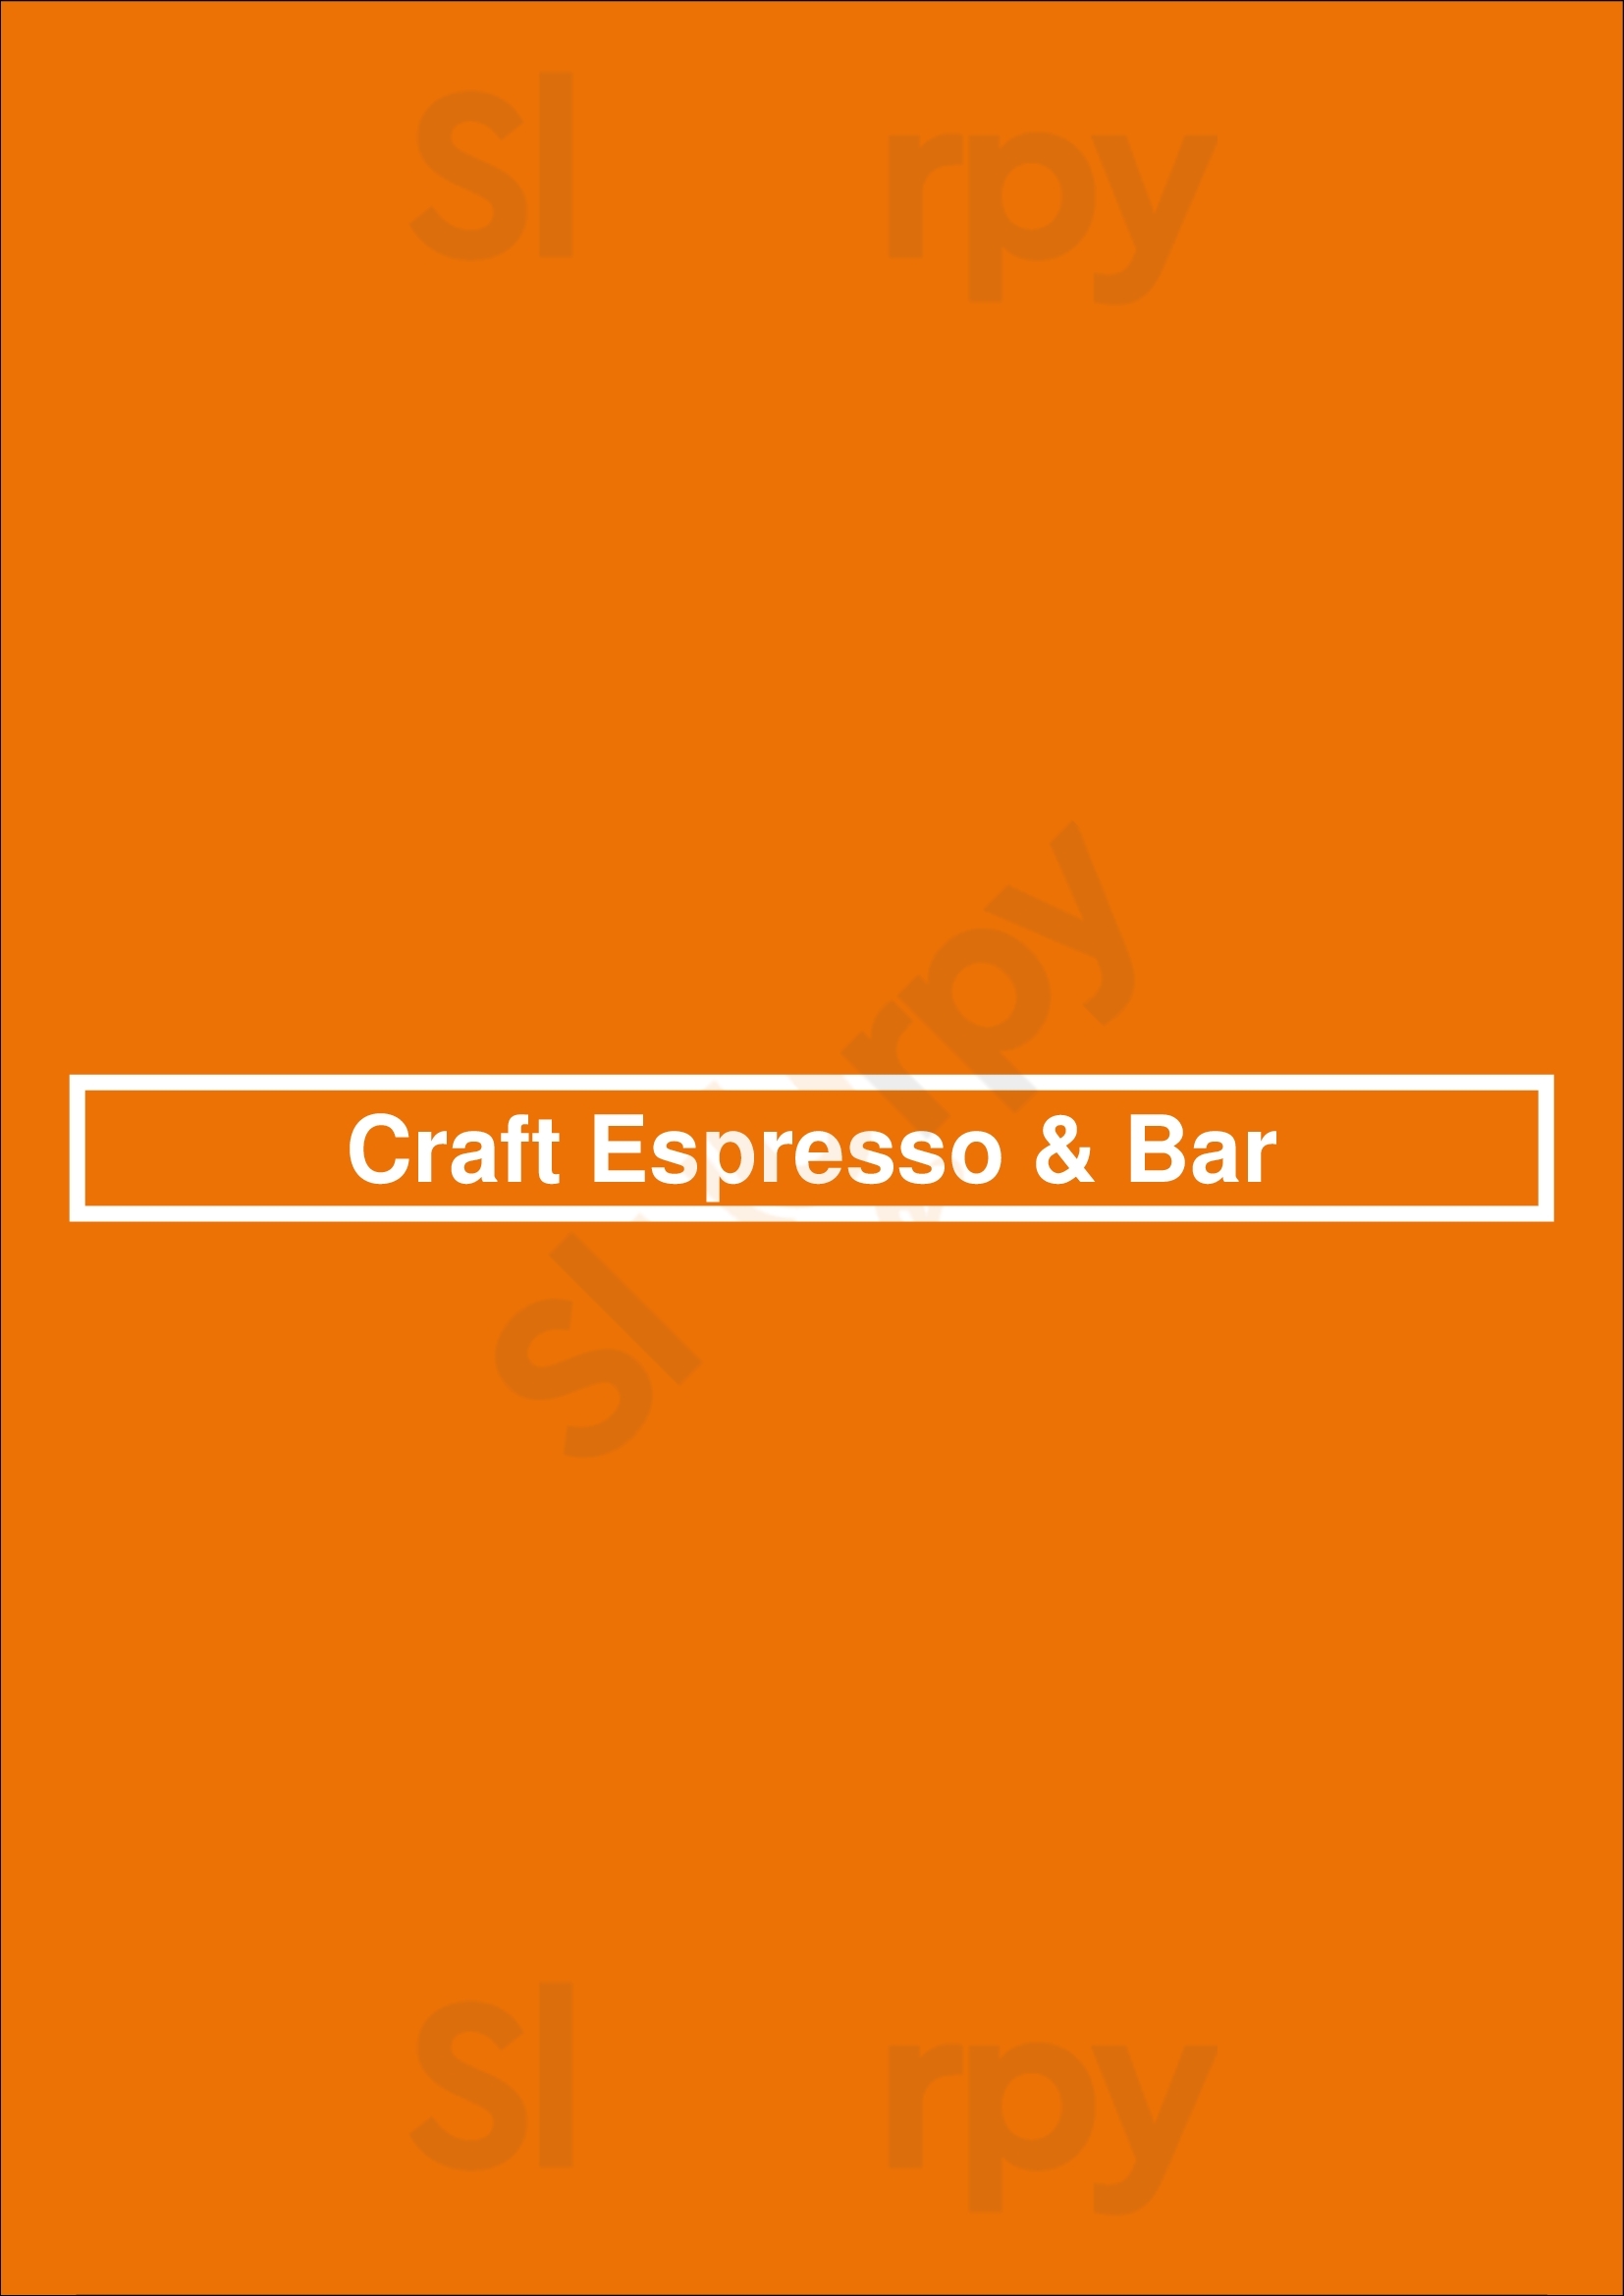 Craft Espresso & Bar Mooloolaba Menu - 1